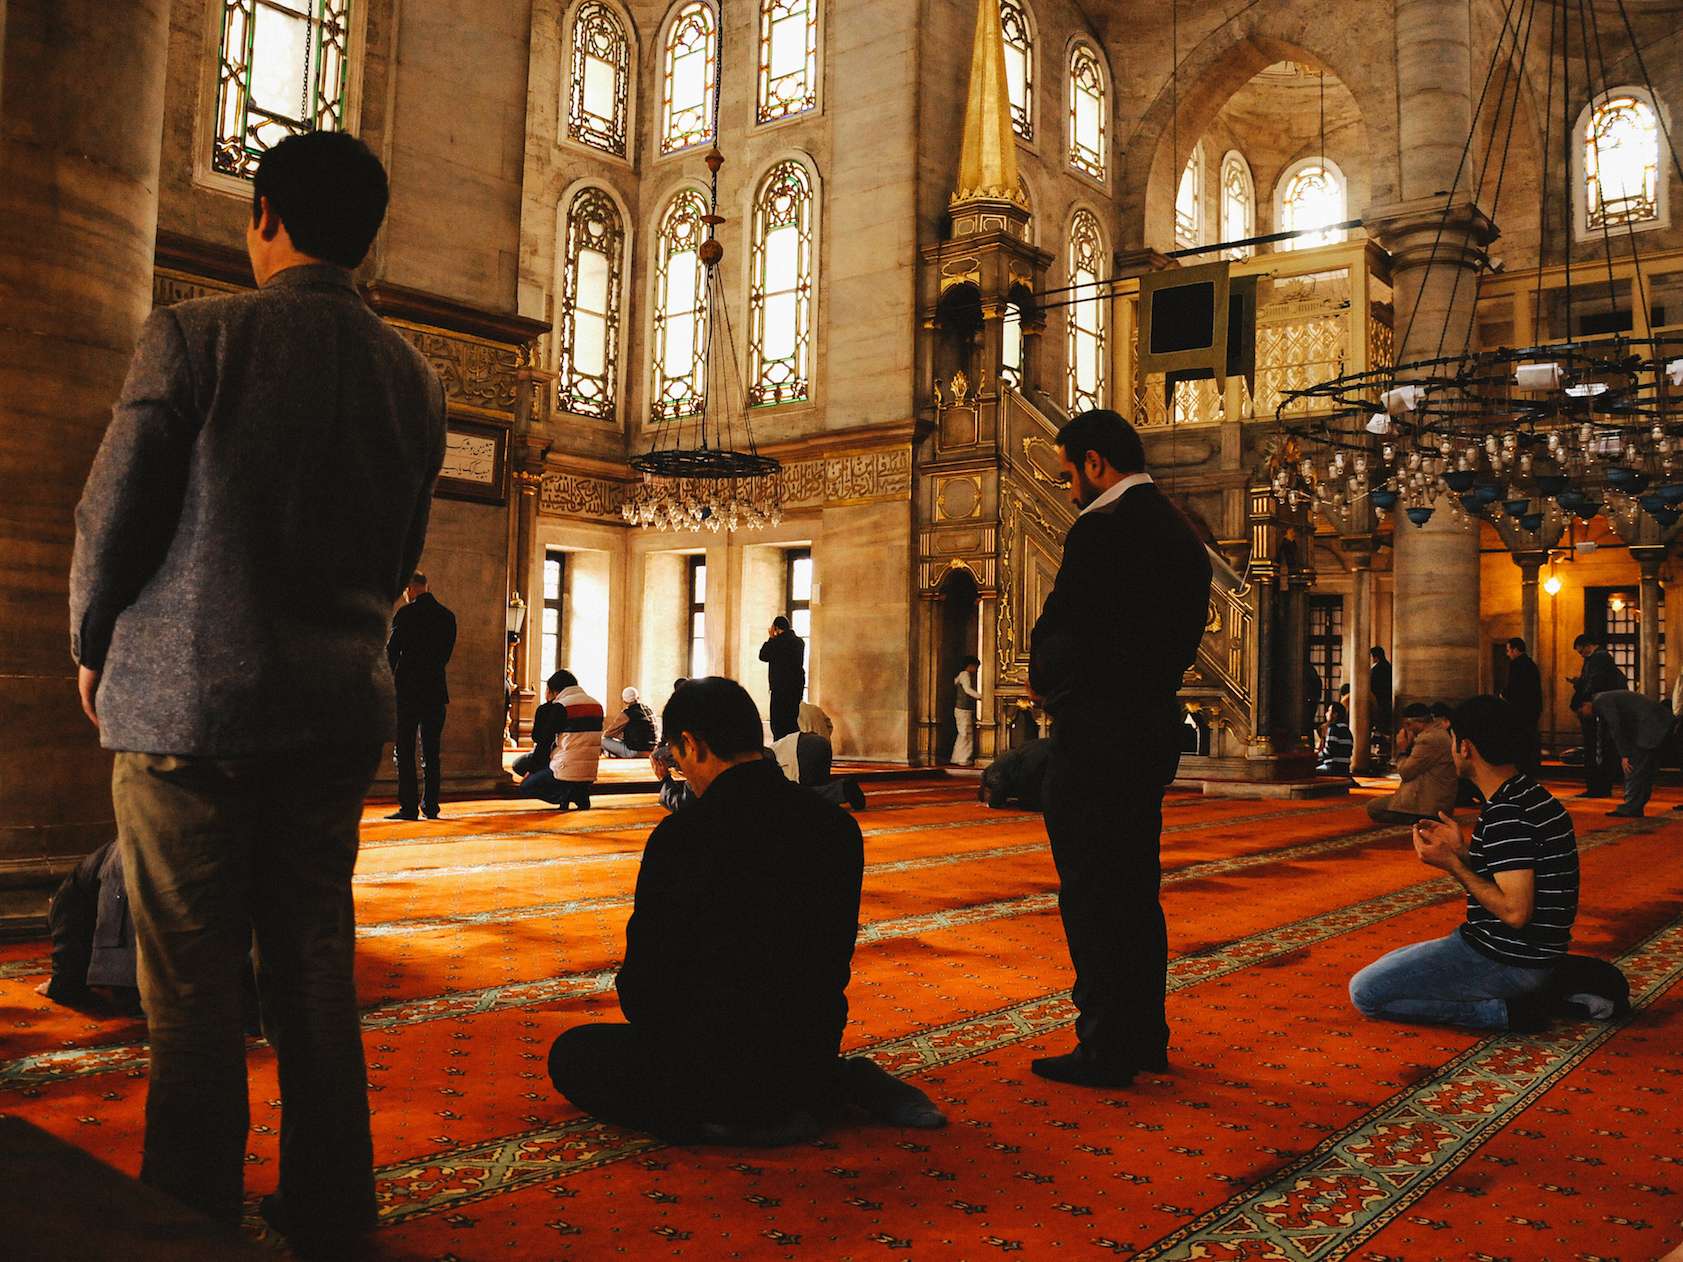 Eyup Sultan Mosque, İstanbul, Turkey